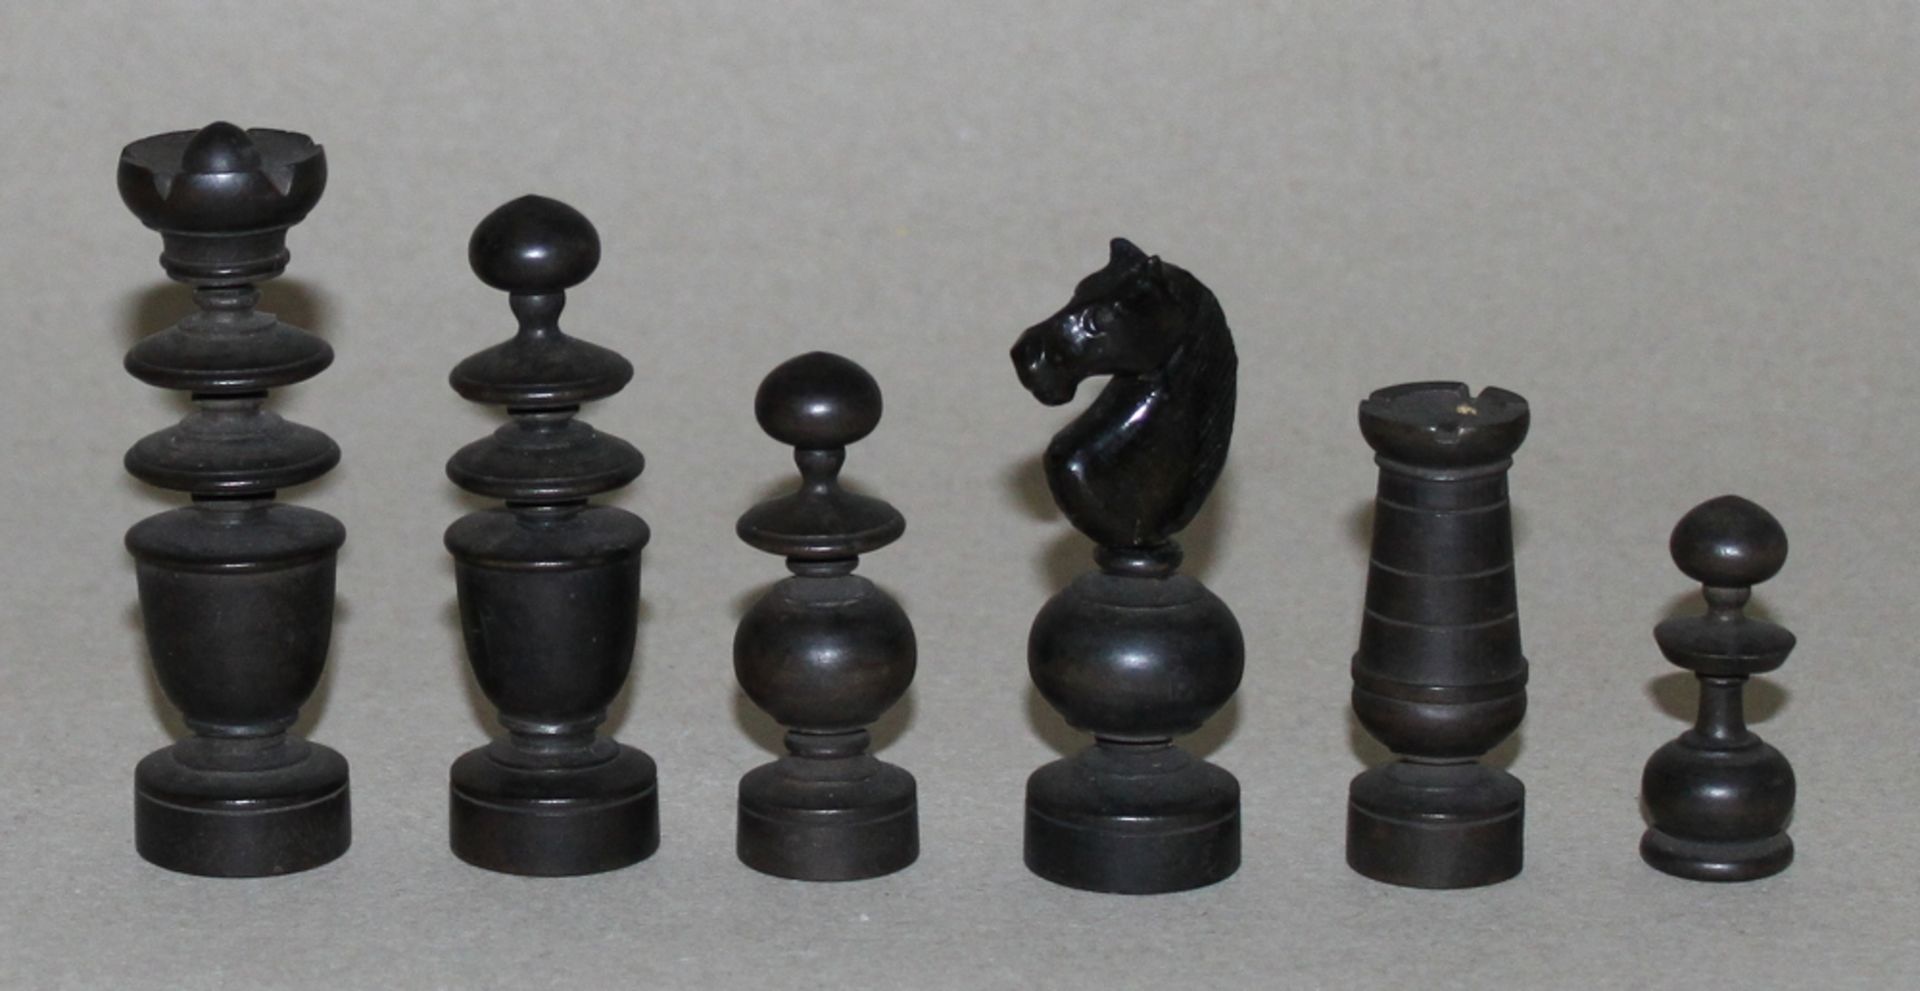 Europa. Schachfiguren aus Holz im Régence - Stil. Eine Partei in schwarz, die andere naturfarben. - Bild 3 aus 3